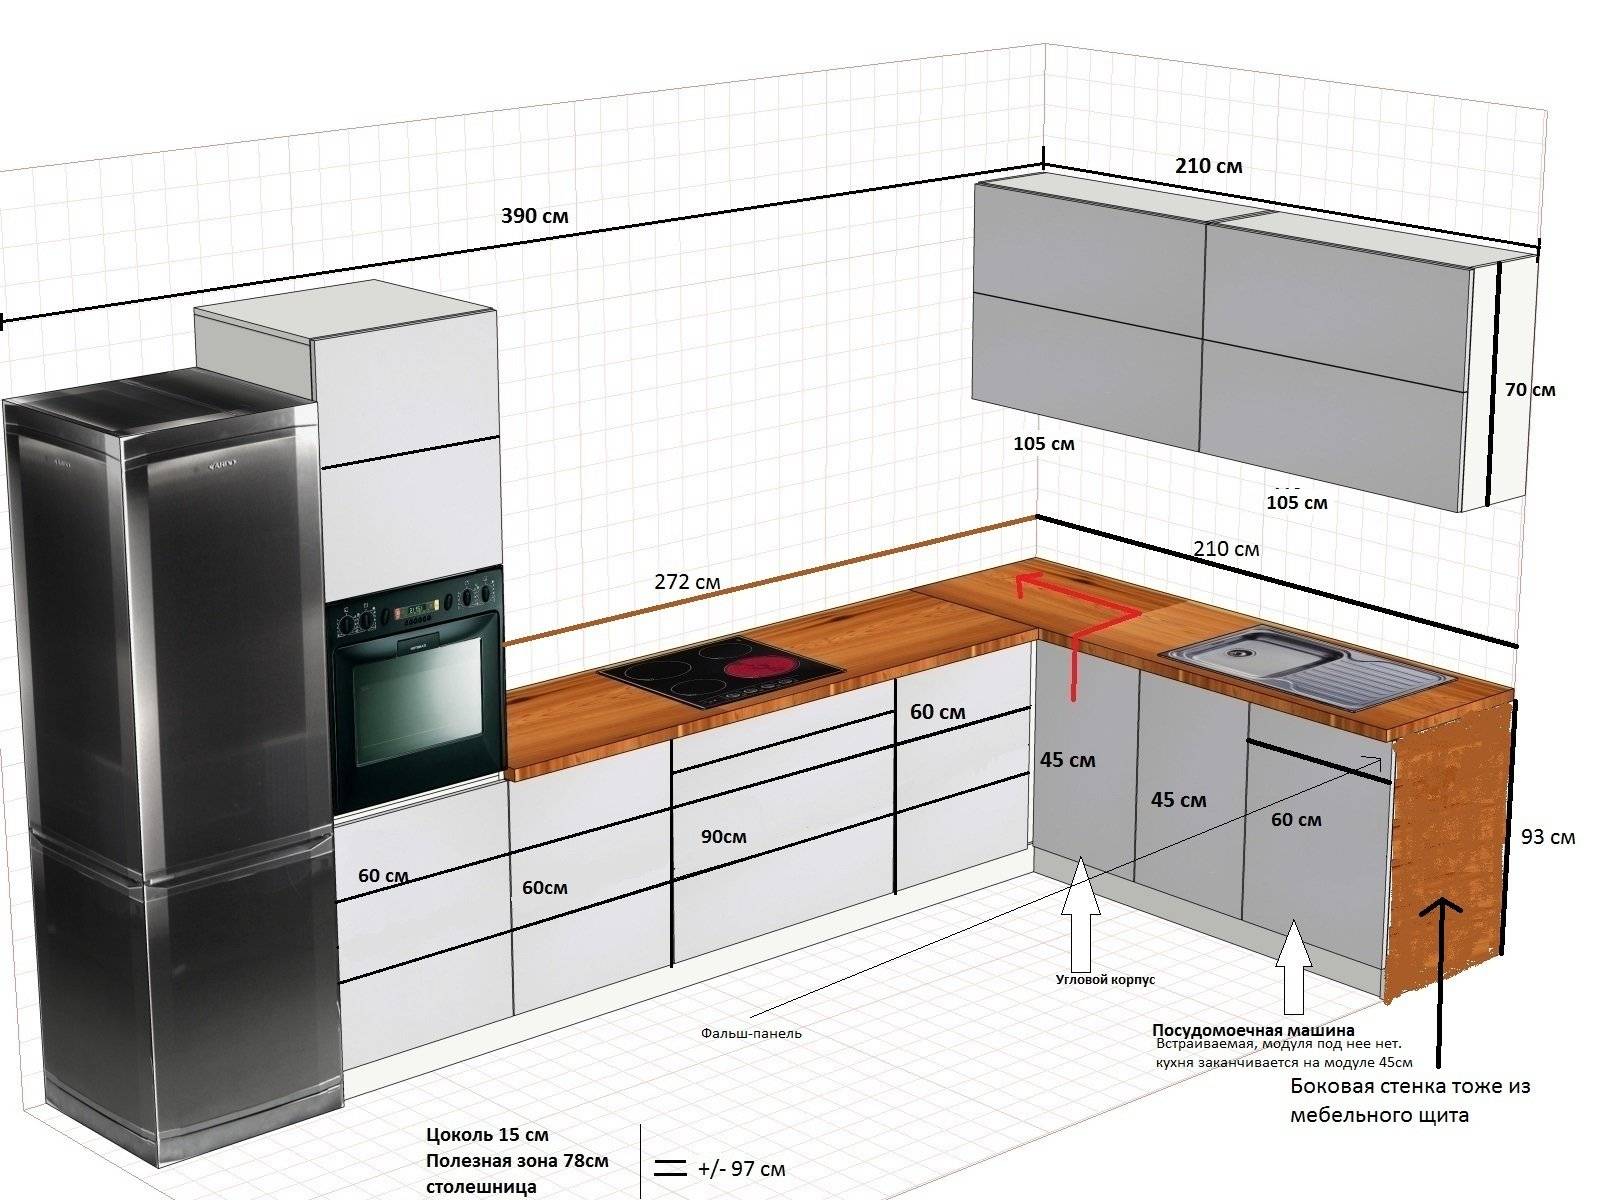 Рабочая высота кухни от пола до столешницы: стандарт